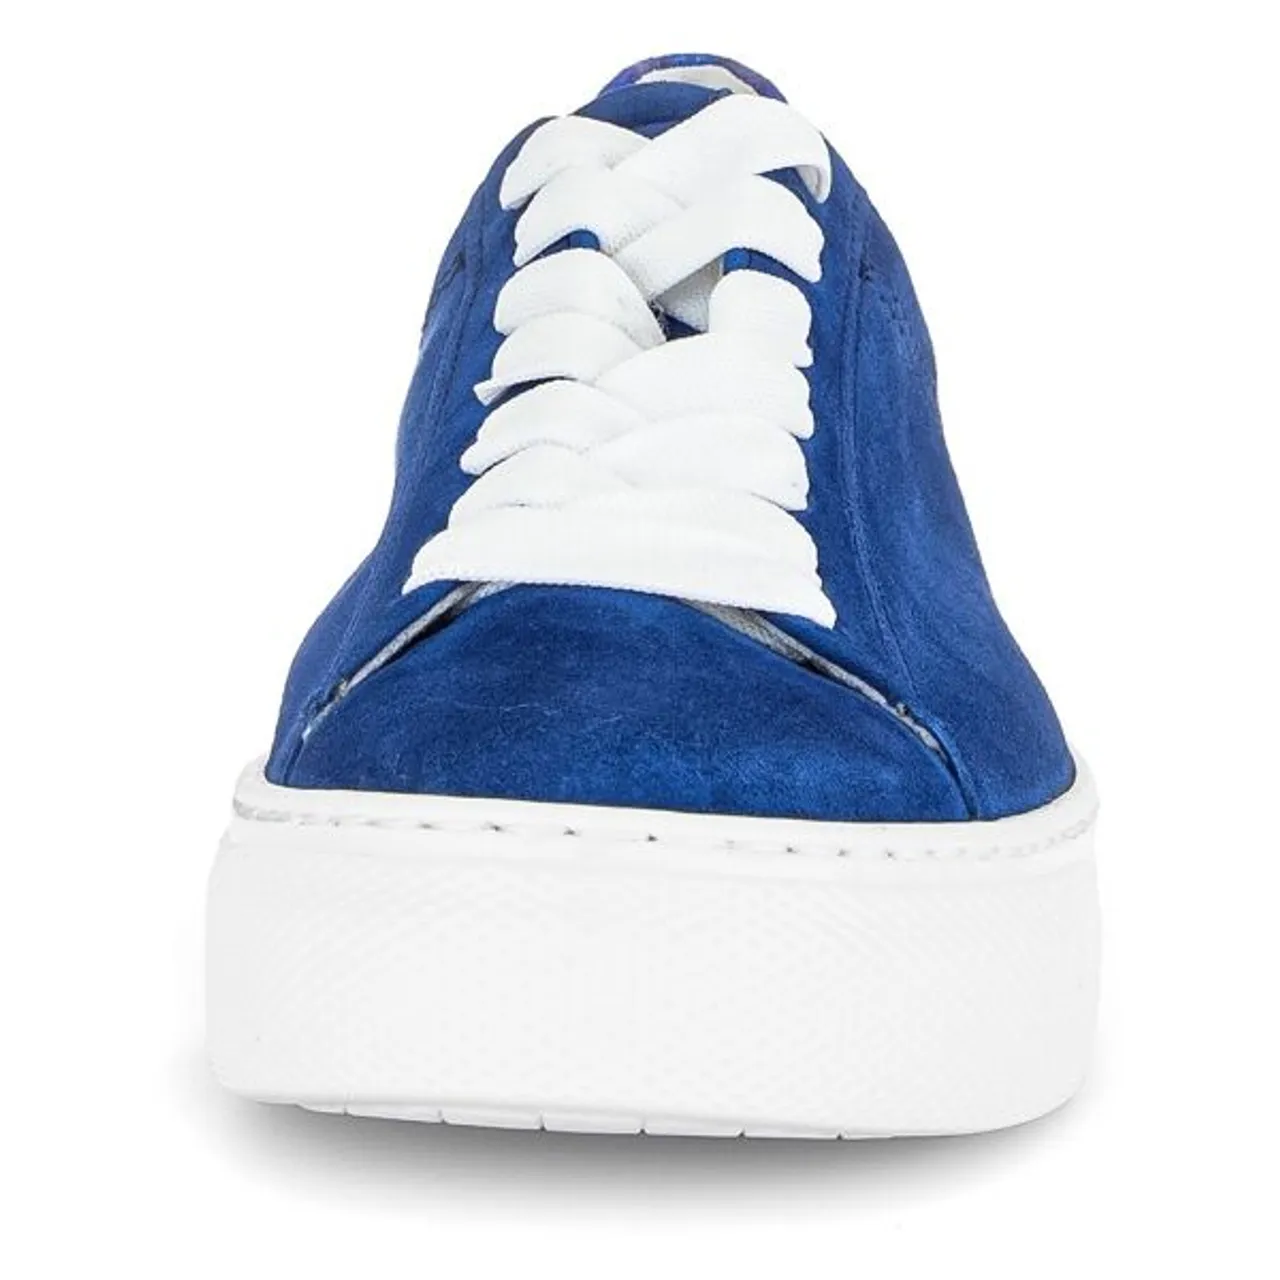 Plateausneaker GABOR "FLORENZ" Gr. 40, blau Damen Schuhe Sneaker mit dezenten Kontrastbesatz, Freizeitschuh, Halbschuh, Schnürschuh